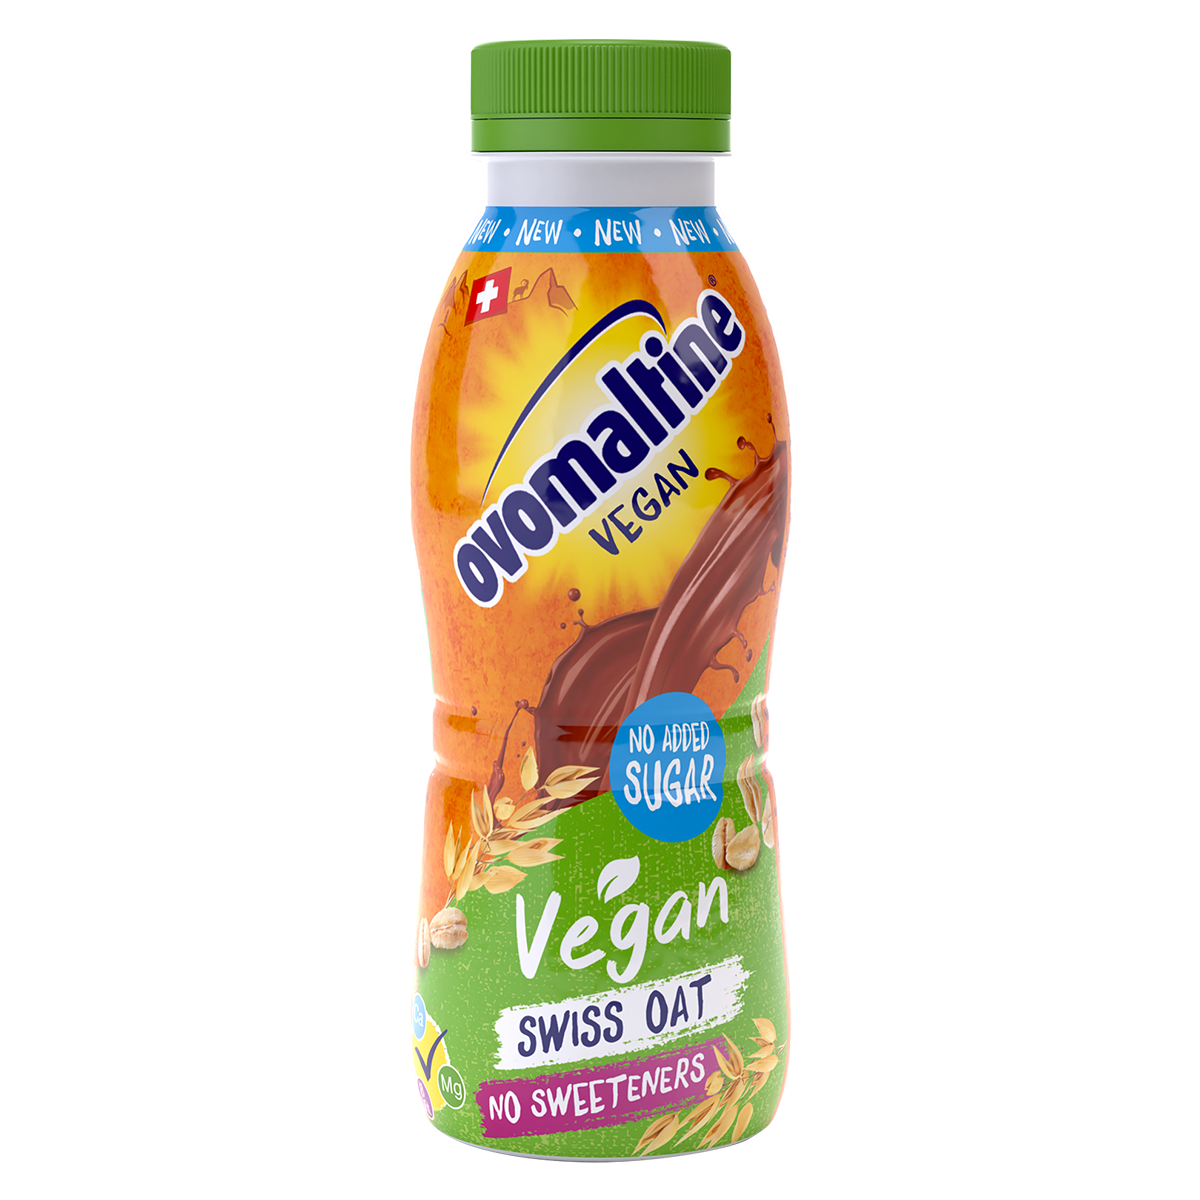  Ovo Vegan Drink - de l’énergie végane à emporter